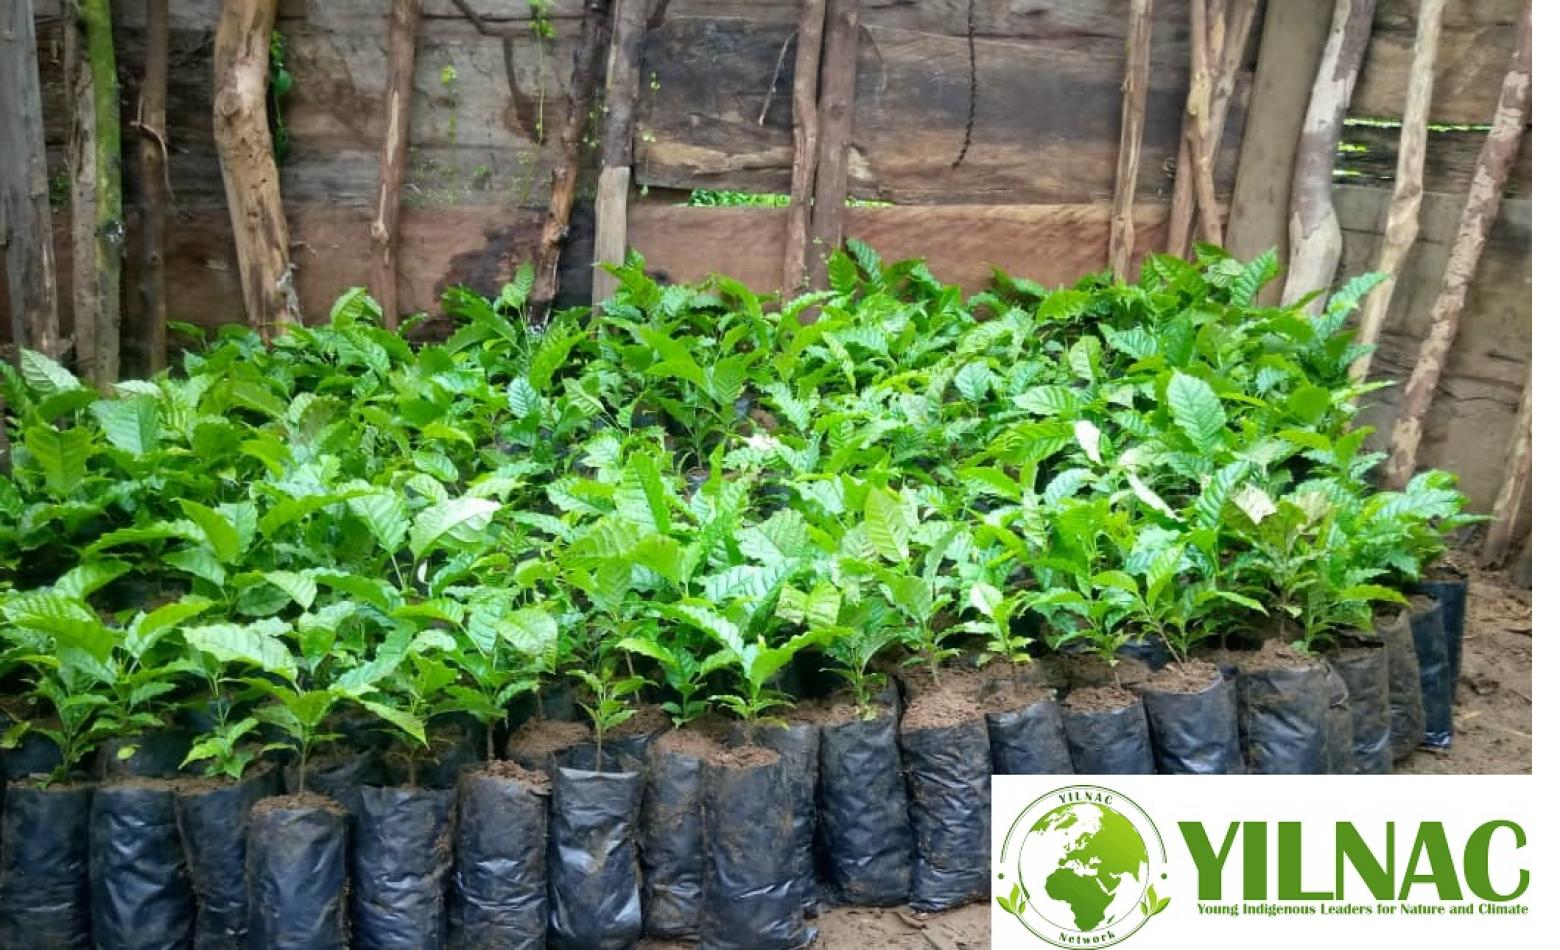 YILNAC Network Accompagne les jeunes autochtones dans la Restauration des forêts communautaires par la plantation et la gestion rationnelle d’arbres traditionnels en Territoire de Mwenga